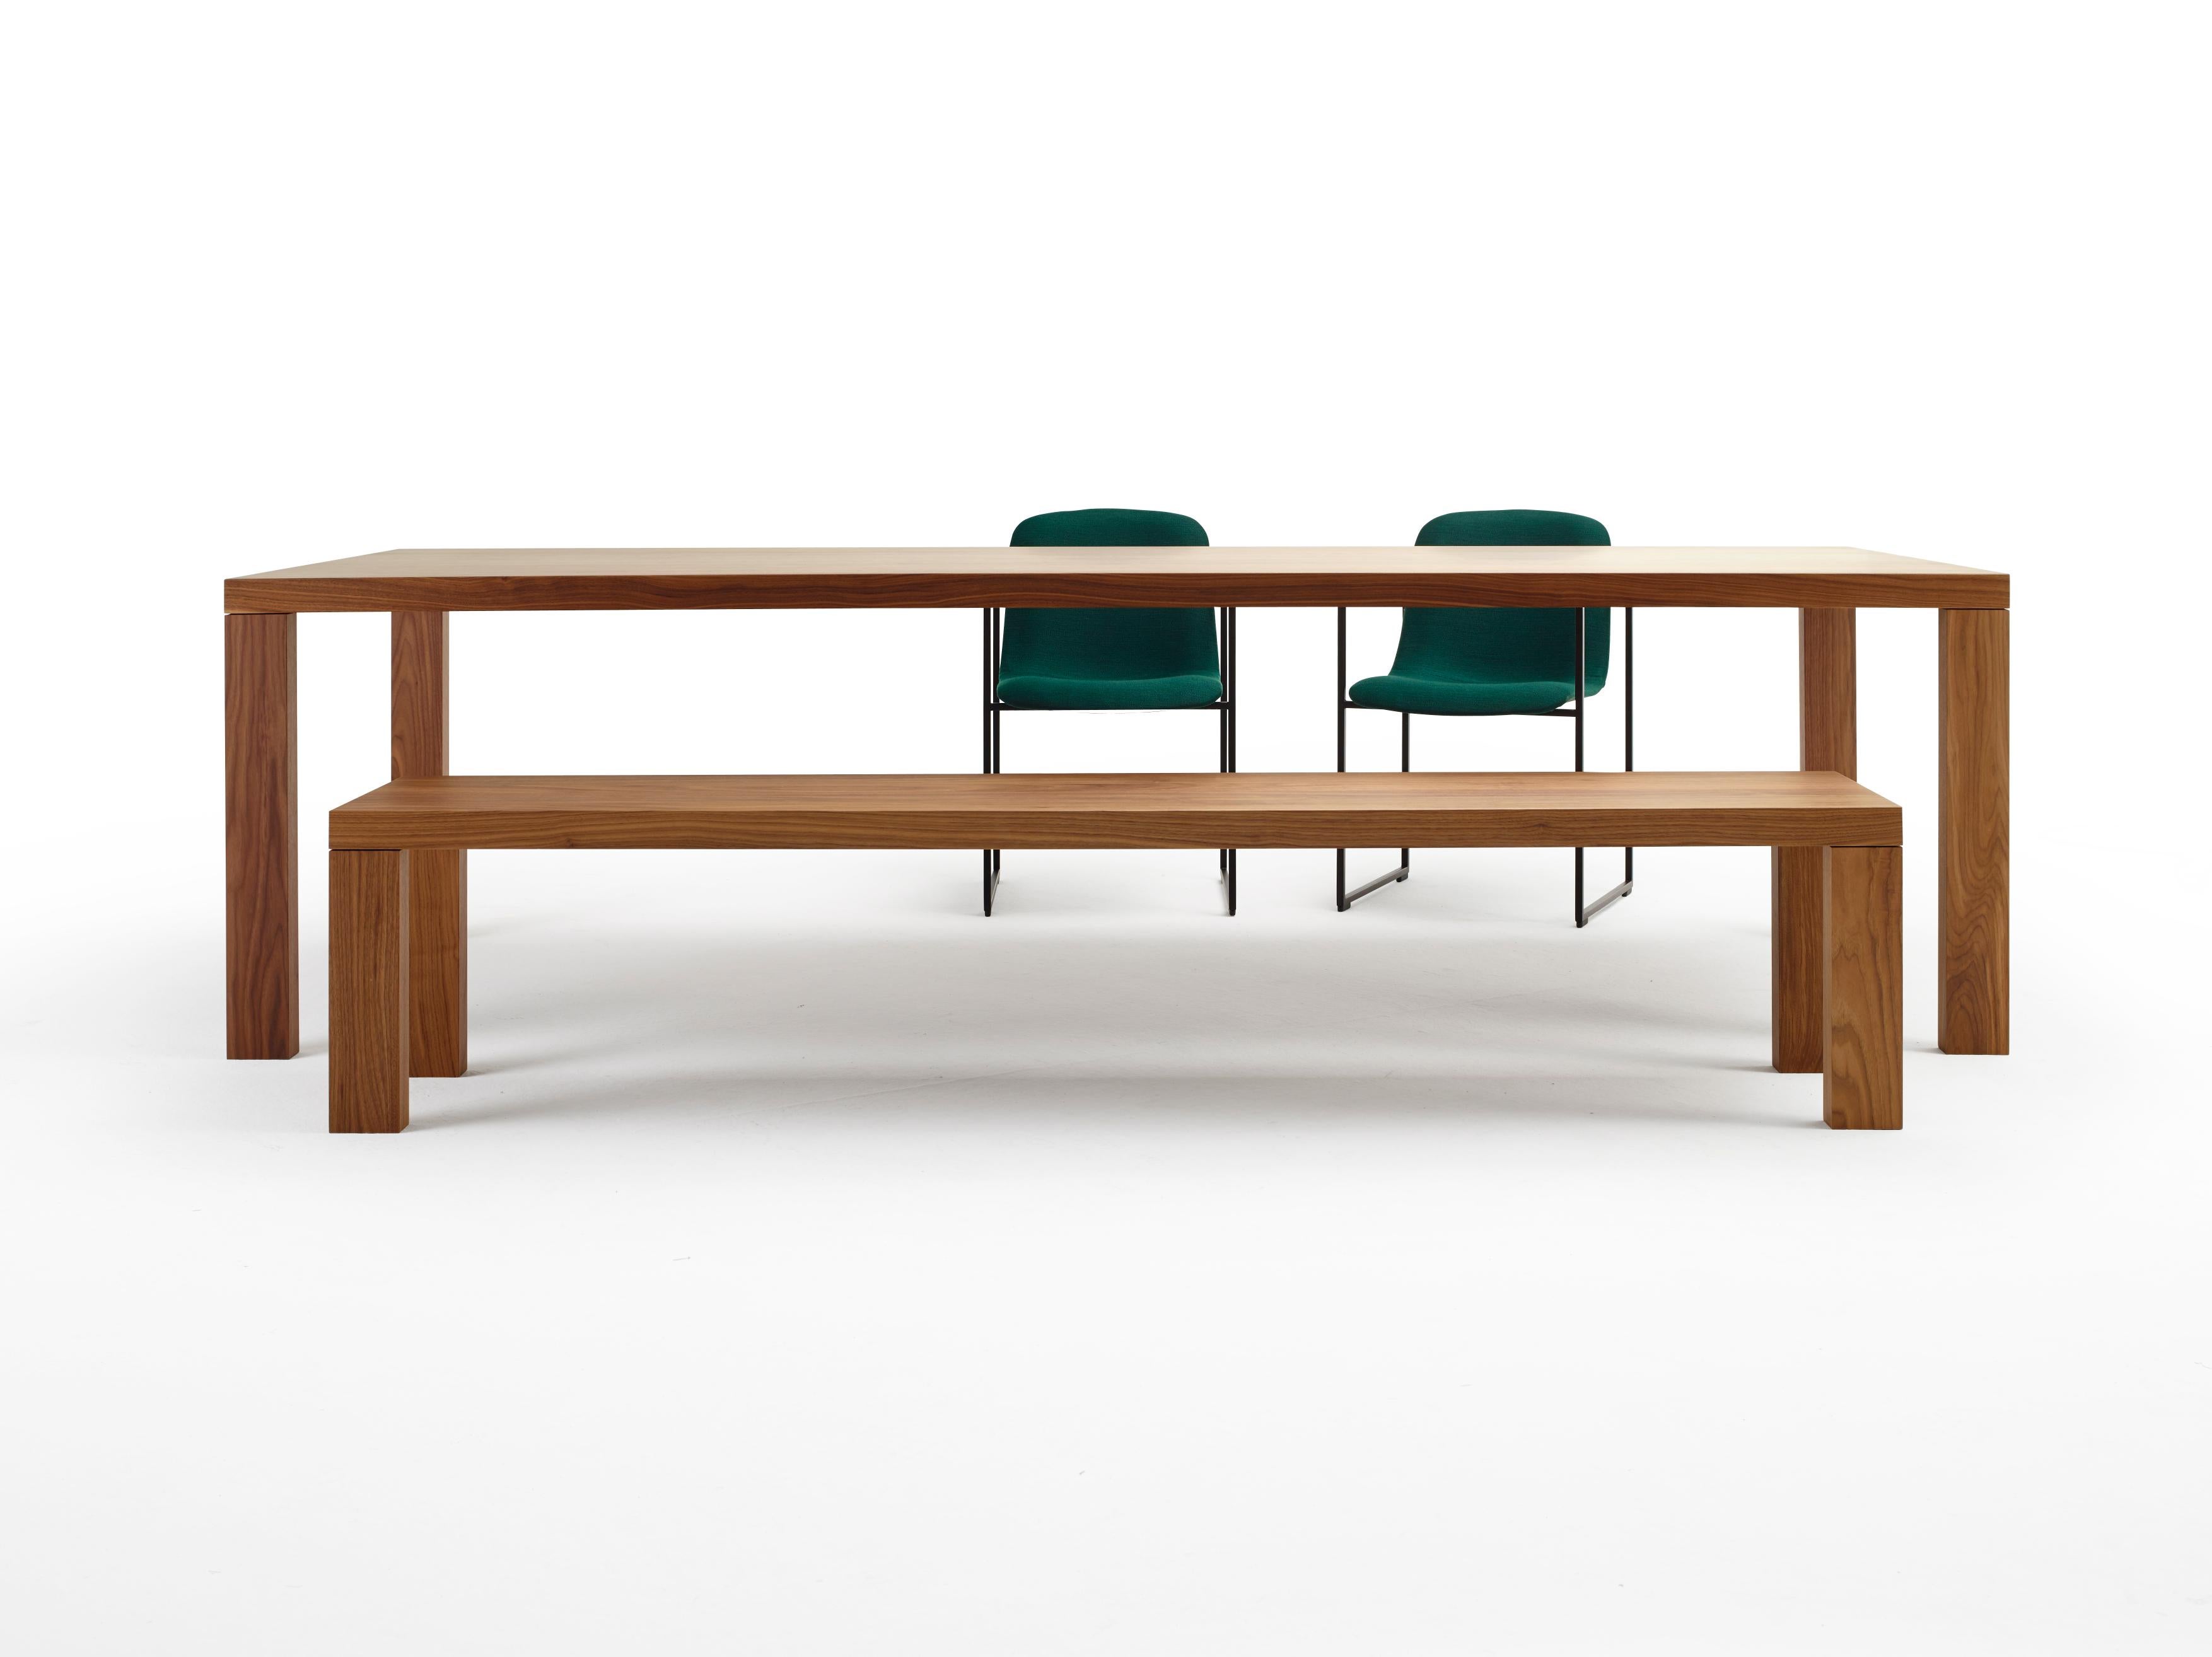 Essenza ist ein Massivholztisch mit einem schlichten und eleganten Design. Mit einer ordentlichen Kabeldurchführung, einem Kabelmanagement und einer Sichtblende lässt er sich auch in einen hochwertigen Schreibtisch verwandeln und mit einem passenden